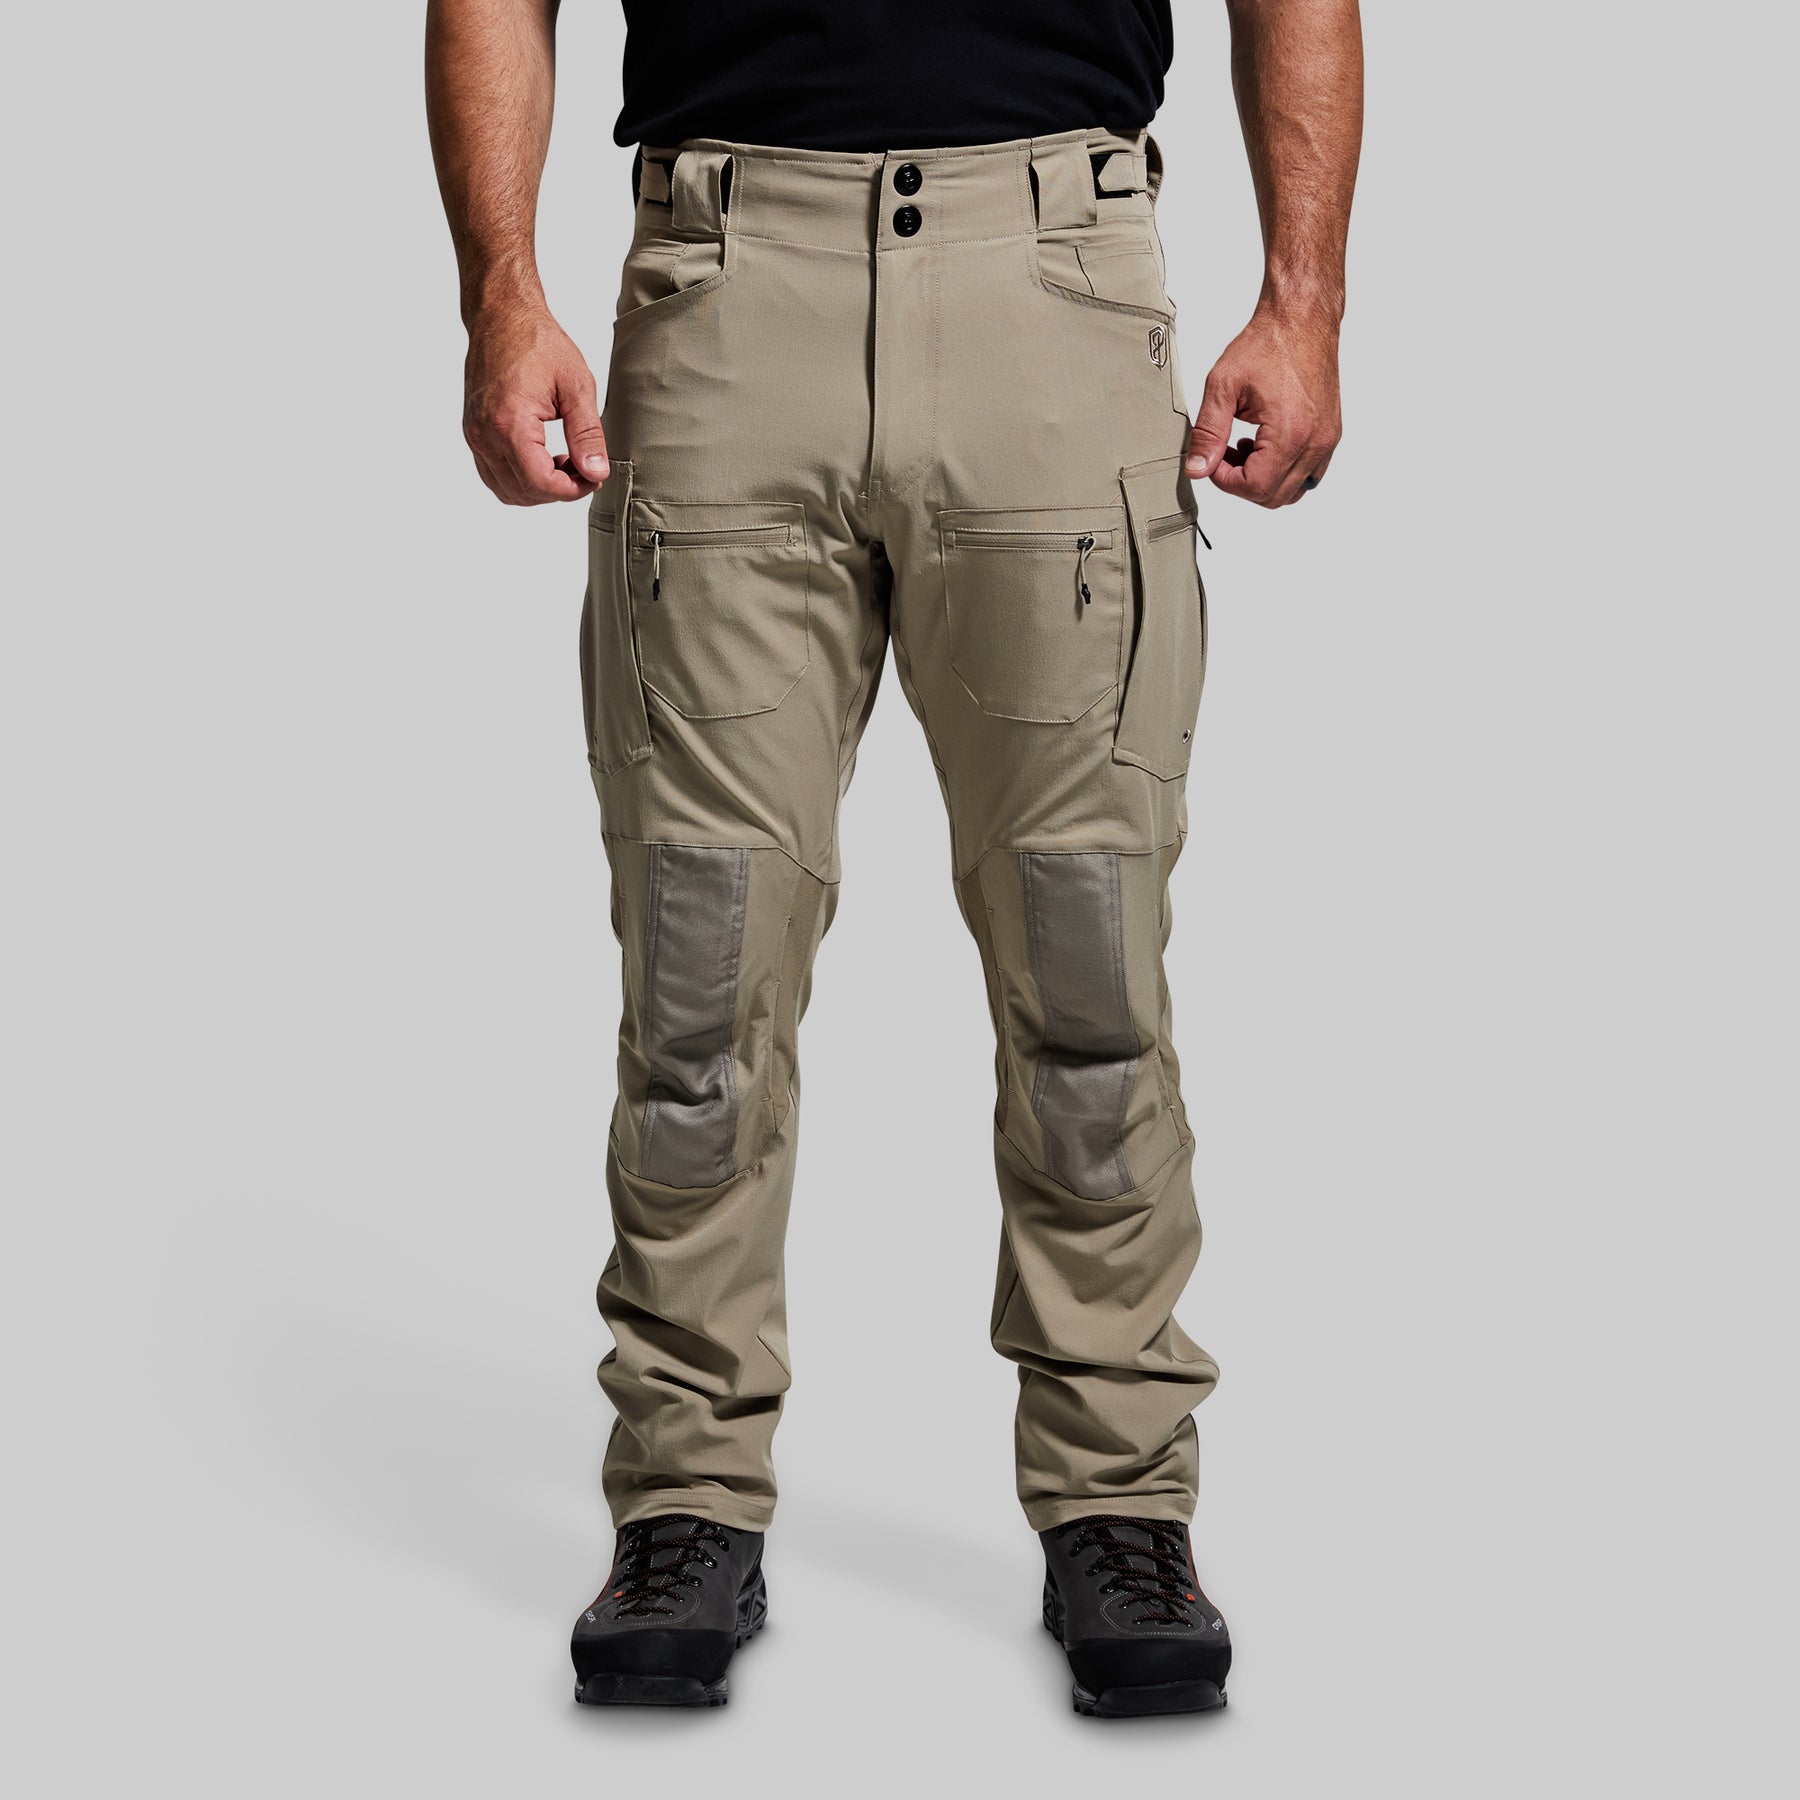 Men's Op Pants | Men's Tactical Pant | Military Pants – Born Primitive